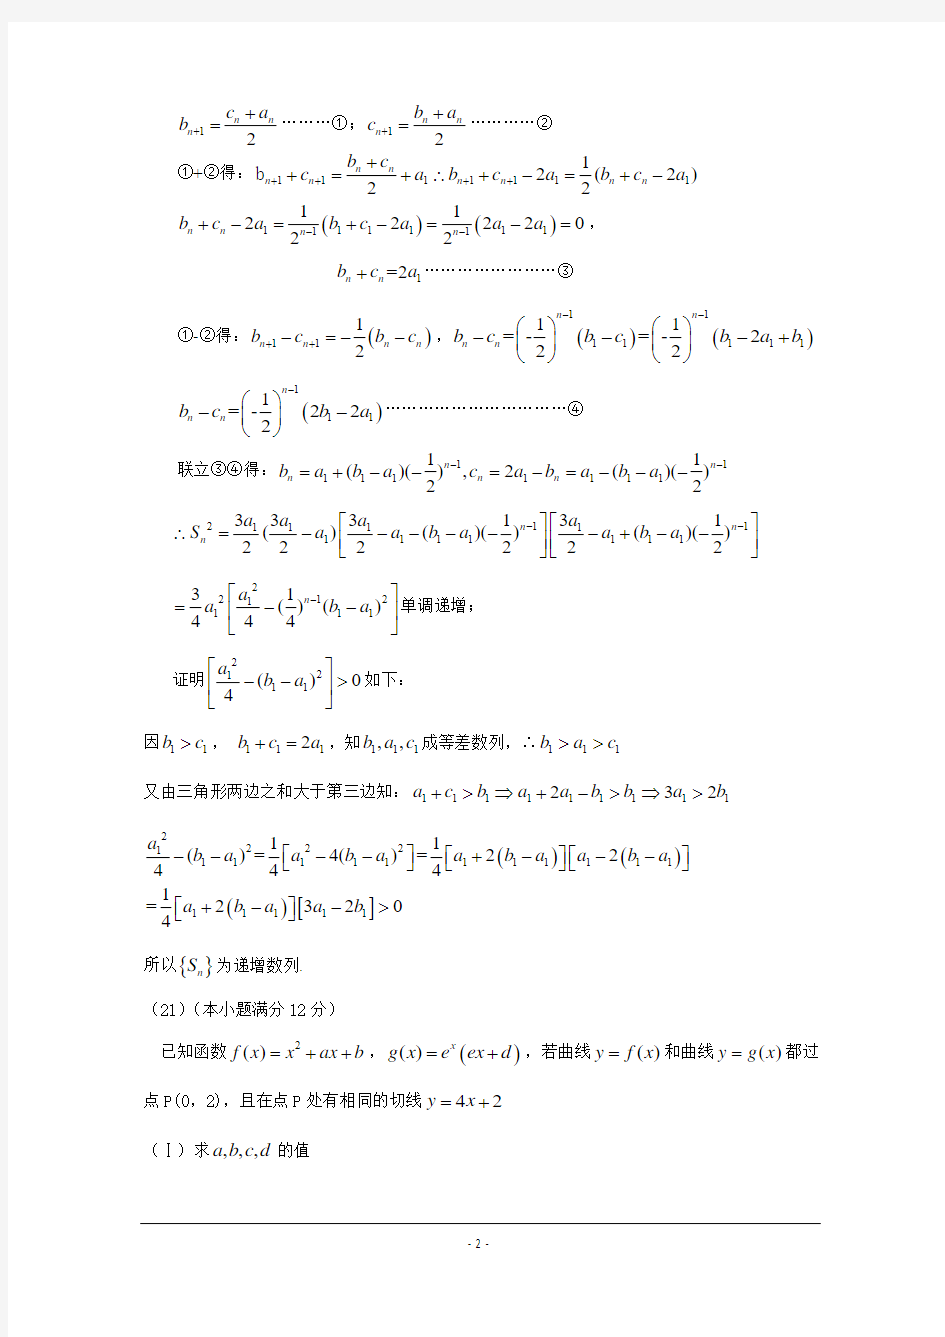 2013年高考数学(理 新课标卷1)11、12、21题 原创解析 word